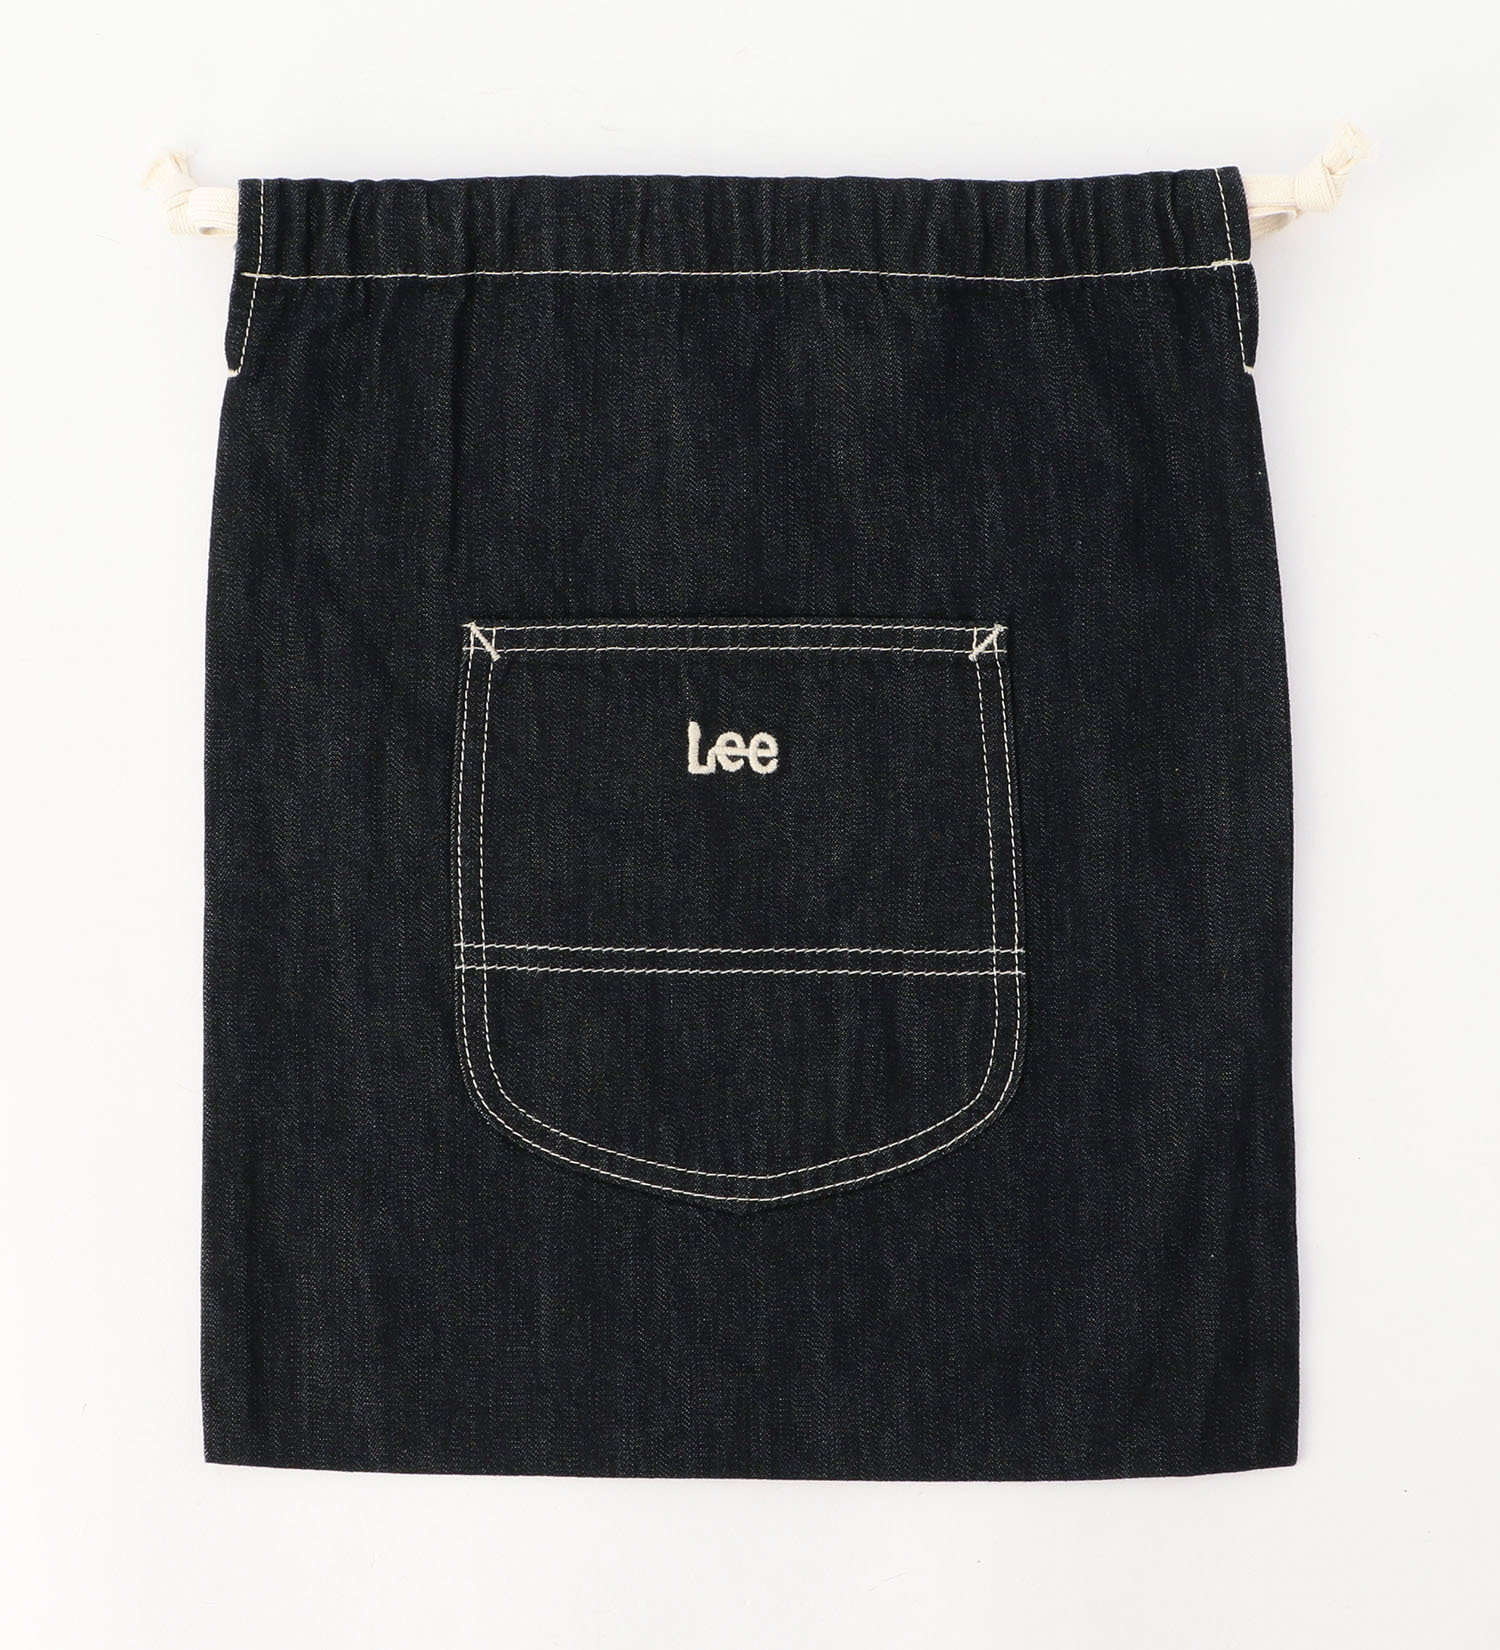 Lee(リー)の巾着バッグ MEDIUM|バッグ/その他バッグ/キッズ|インディゴブルー